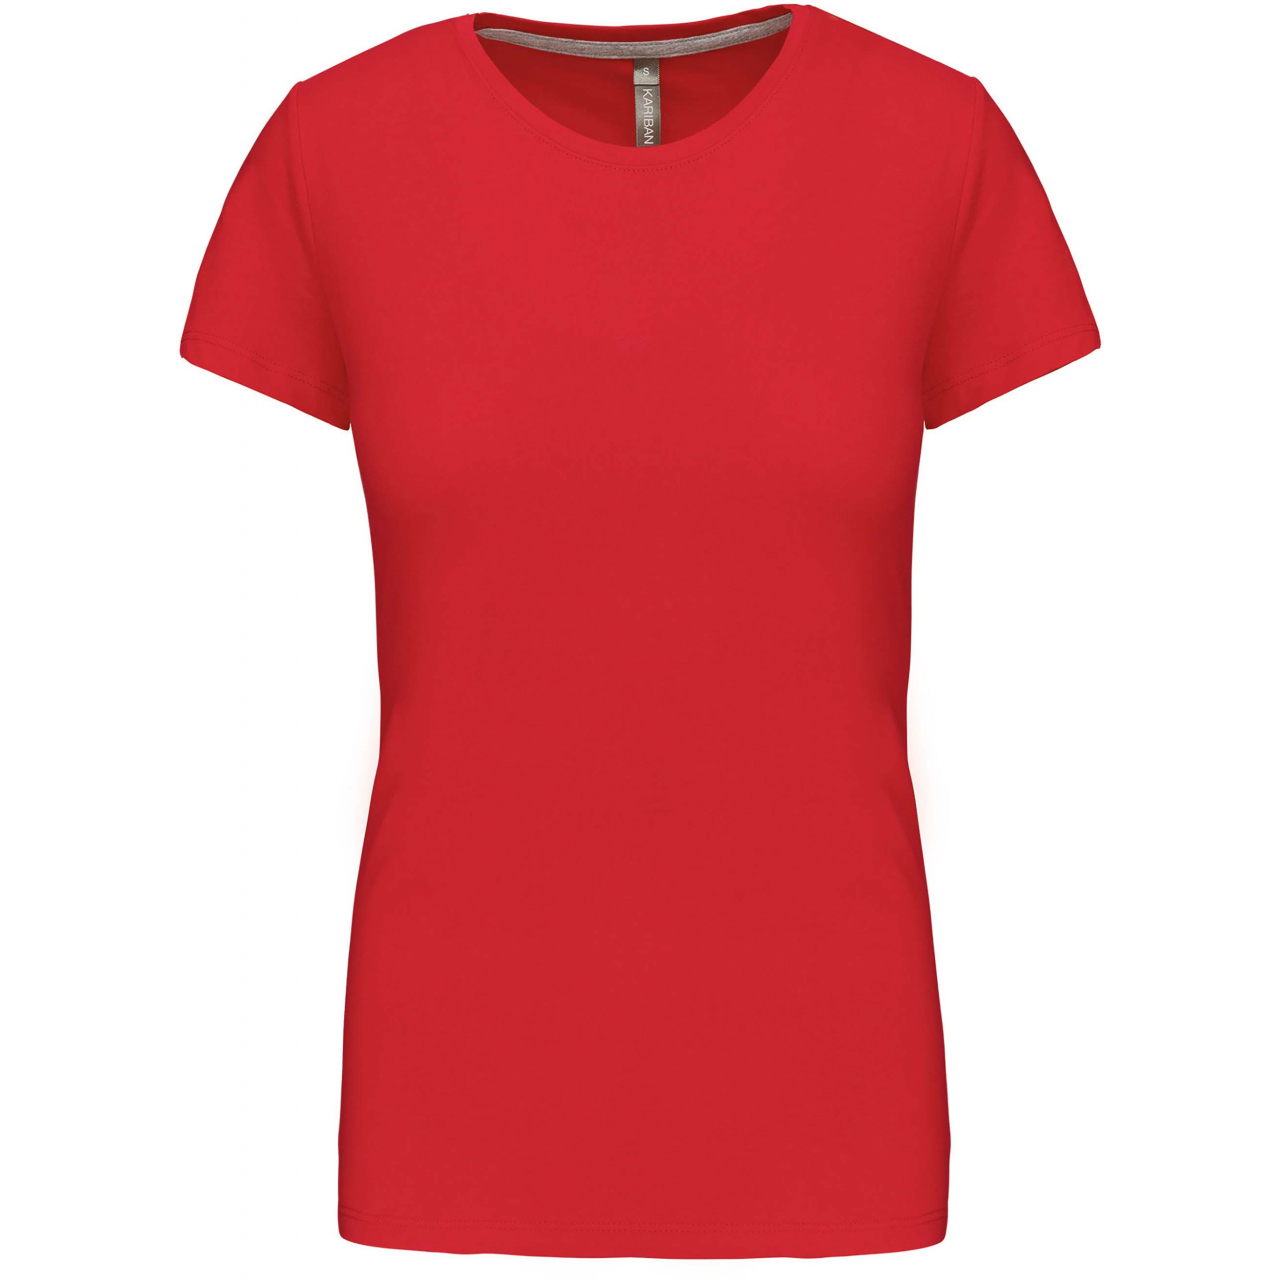 Dámské tričko Kariban s krátkým rukávem - červené, M